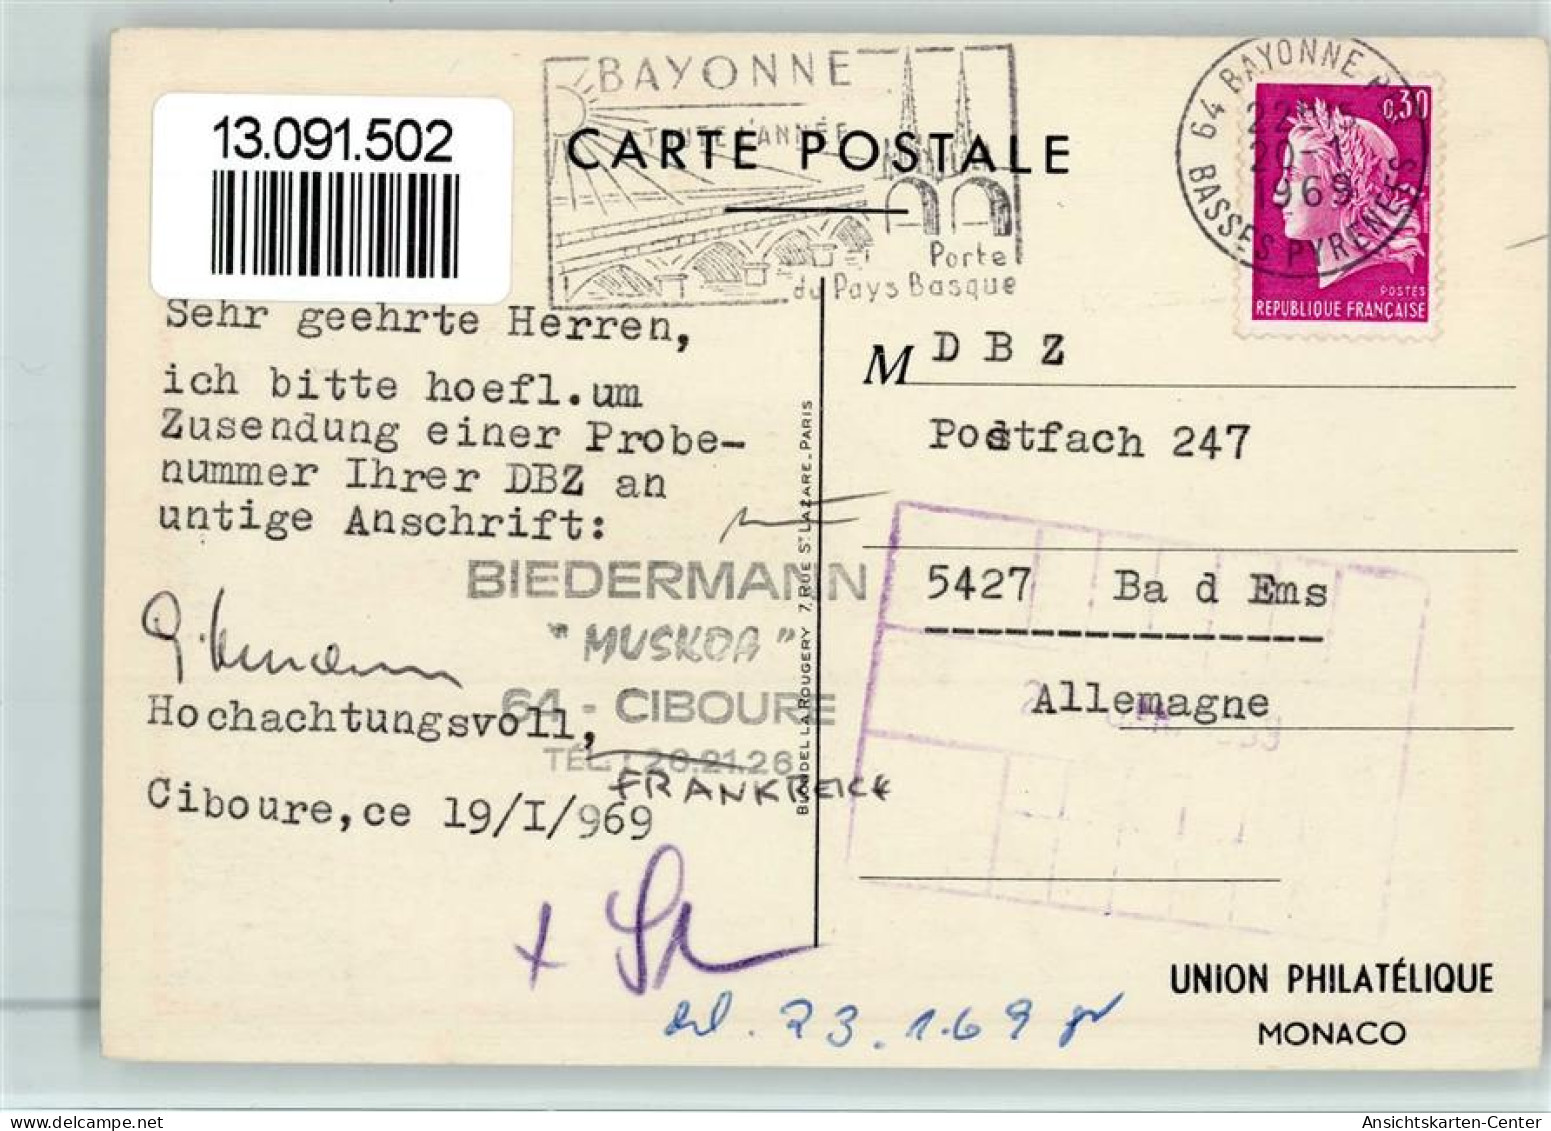 13091502 - Philatelisten- / Briefmarkentage Exposition - Briefmarken (Abbildungen)